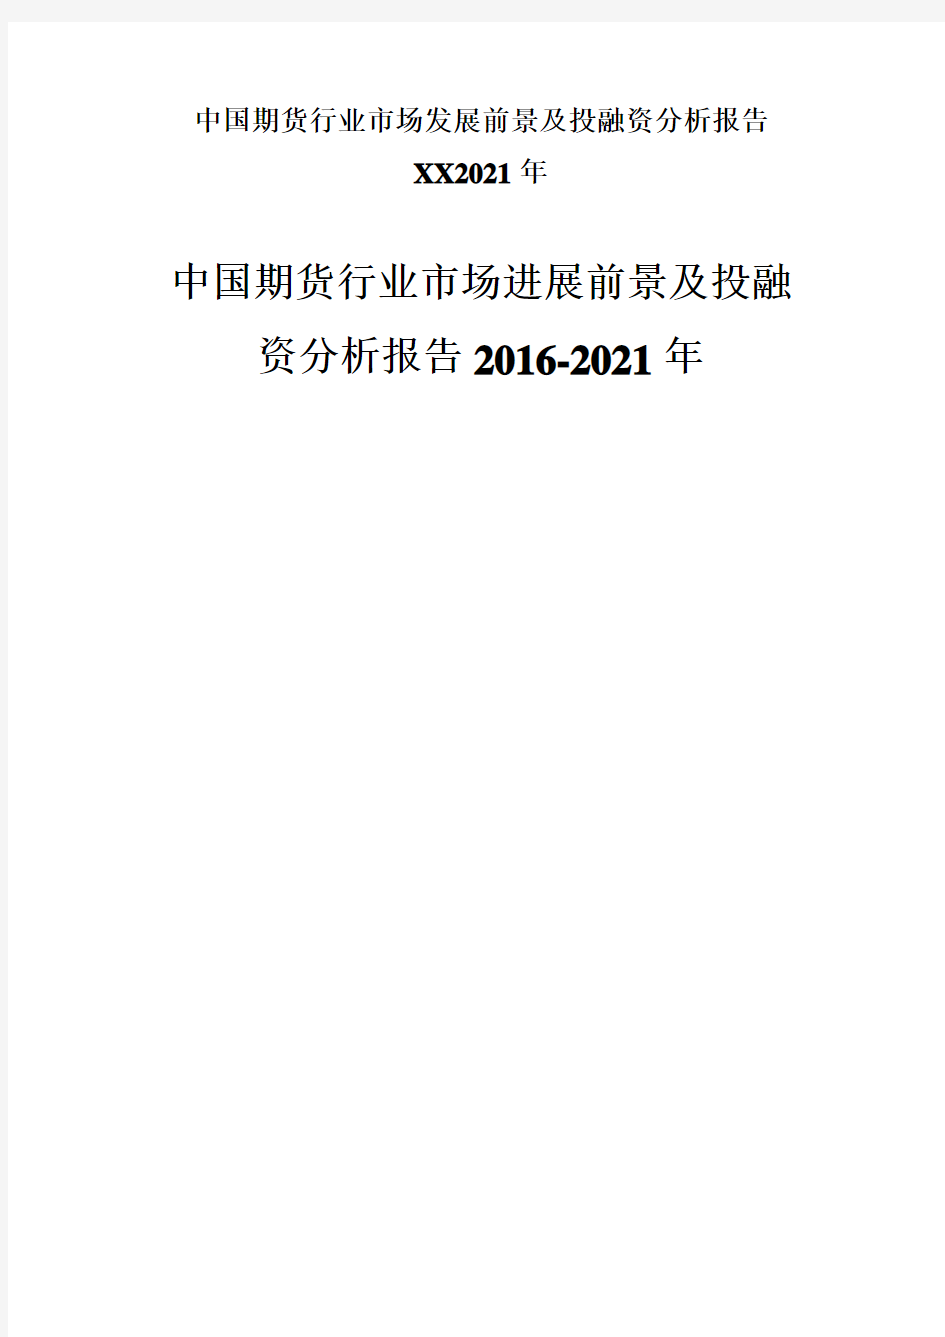 中国期货行业市场发展前景及投融资分析报告XX2021年